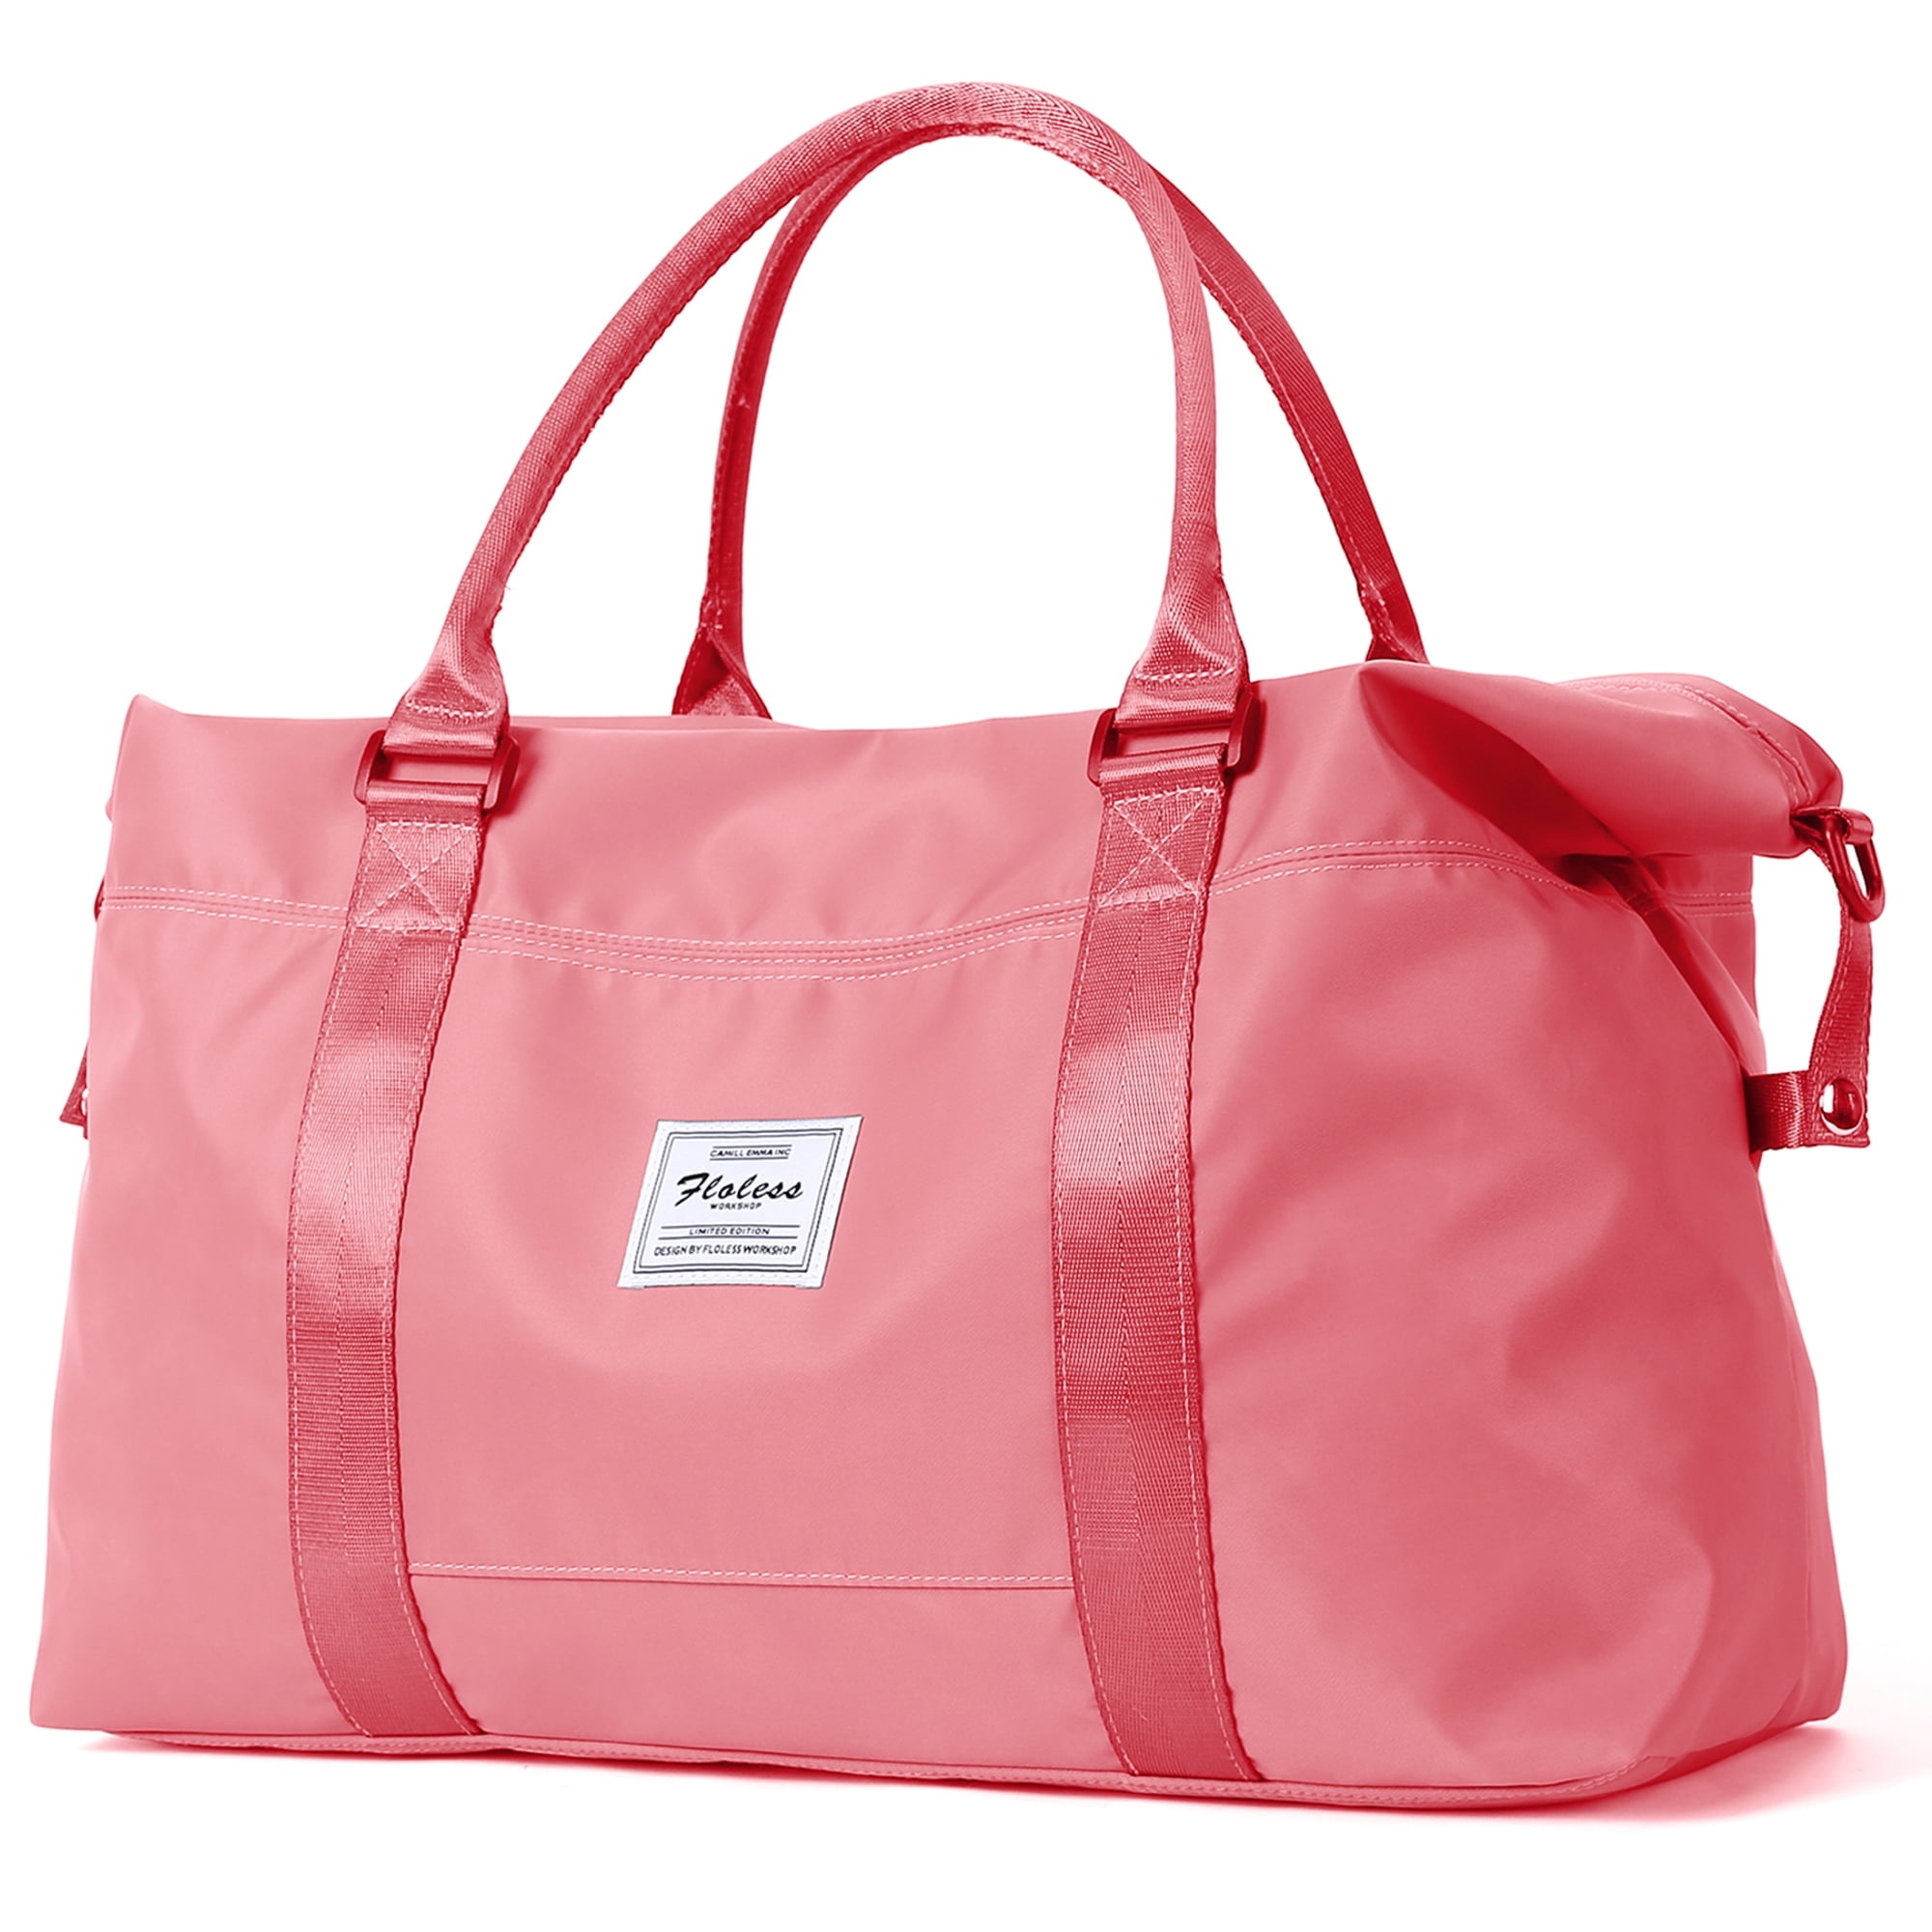 HYC00 Travel Duffel Bag,Sports Tote Gym Bag,Shoulder Weekender Overnight Bag  for Women 